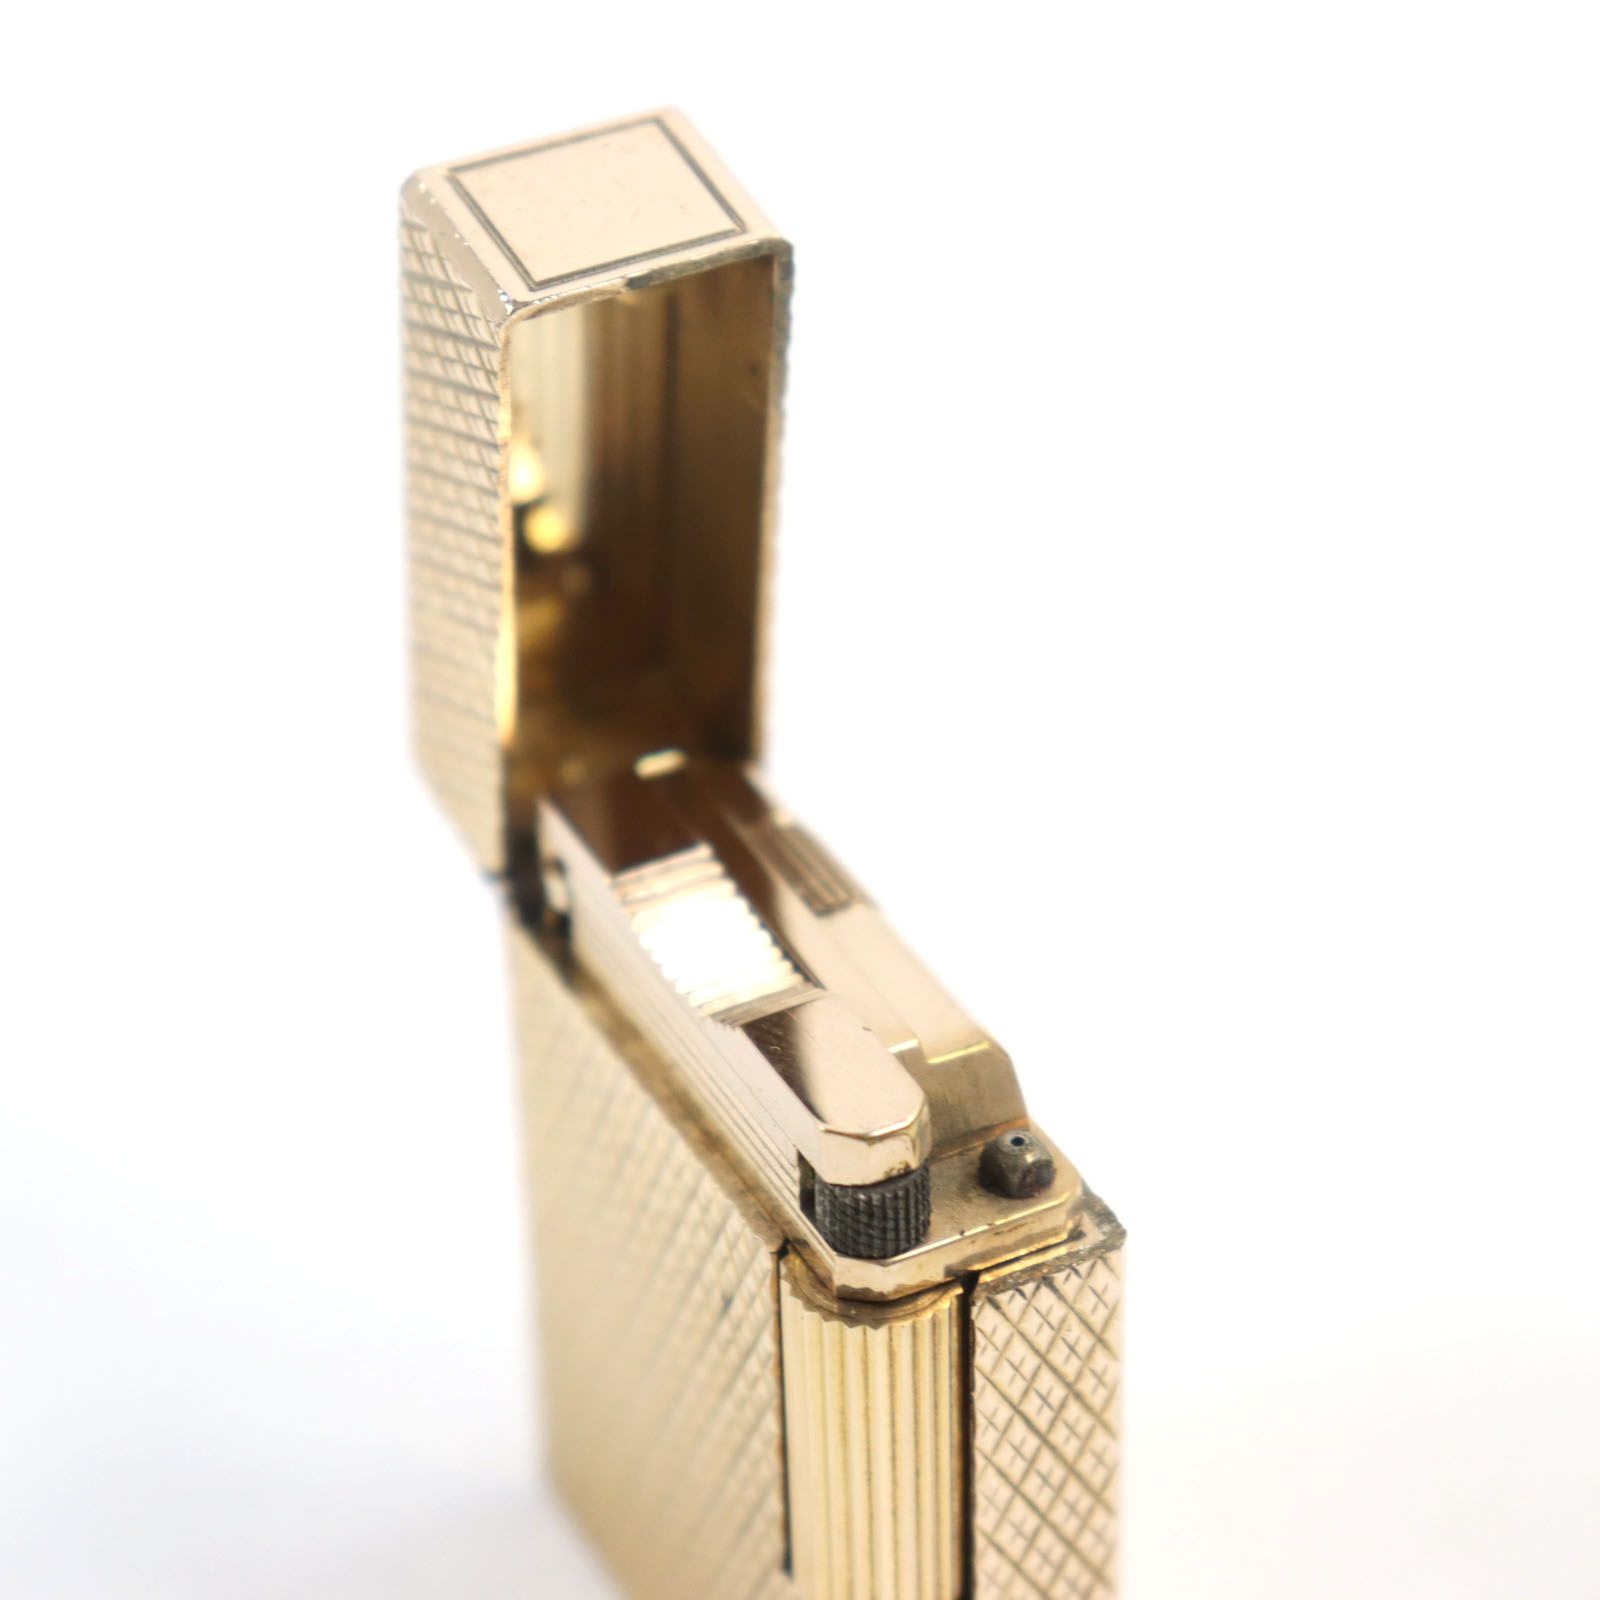 良品○Dupont デュポン ライン1 ショート ダイヤ柄 スクエア ローラー式 ライター ゴールド フランス製 着火確認済み メンズおすすめ